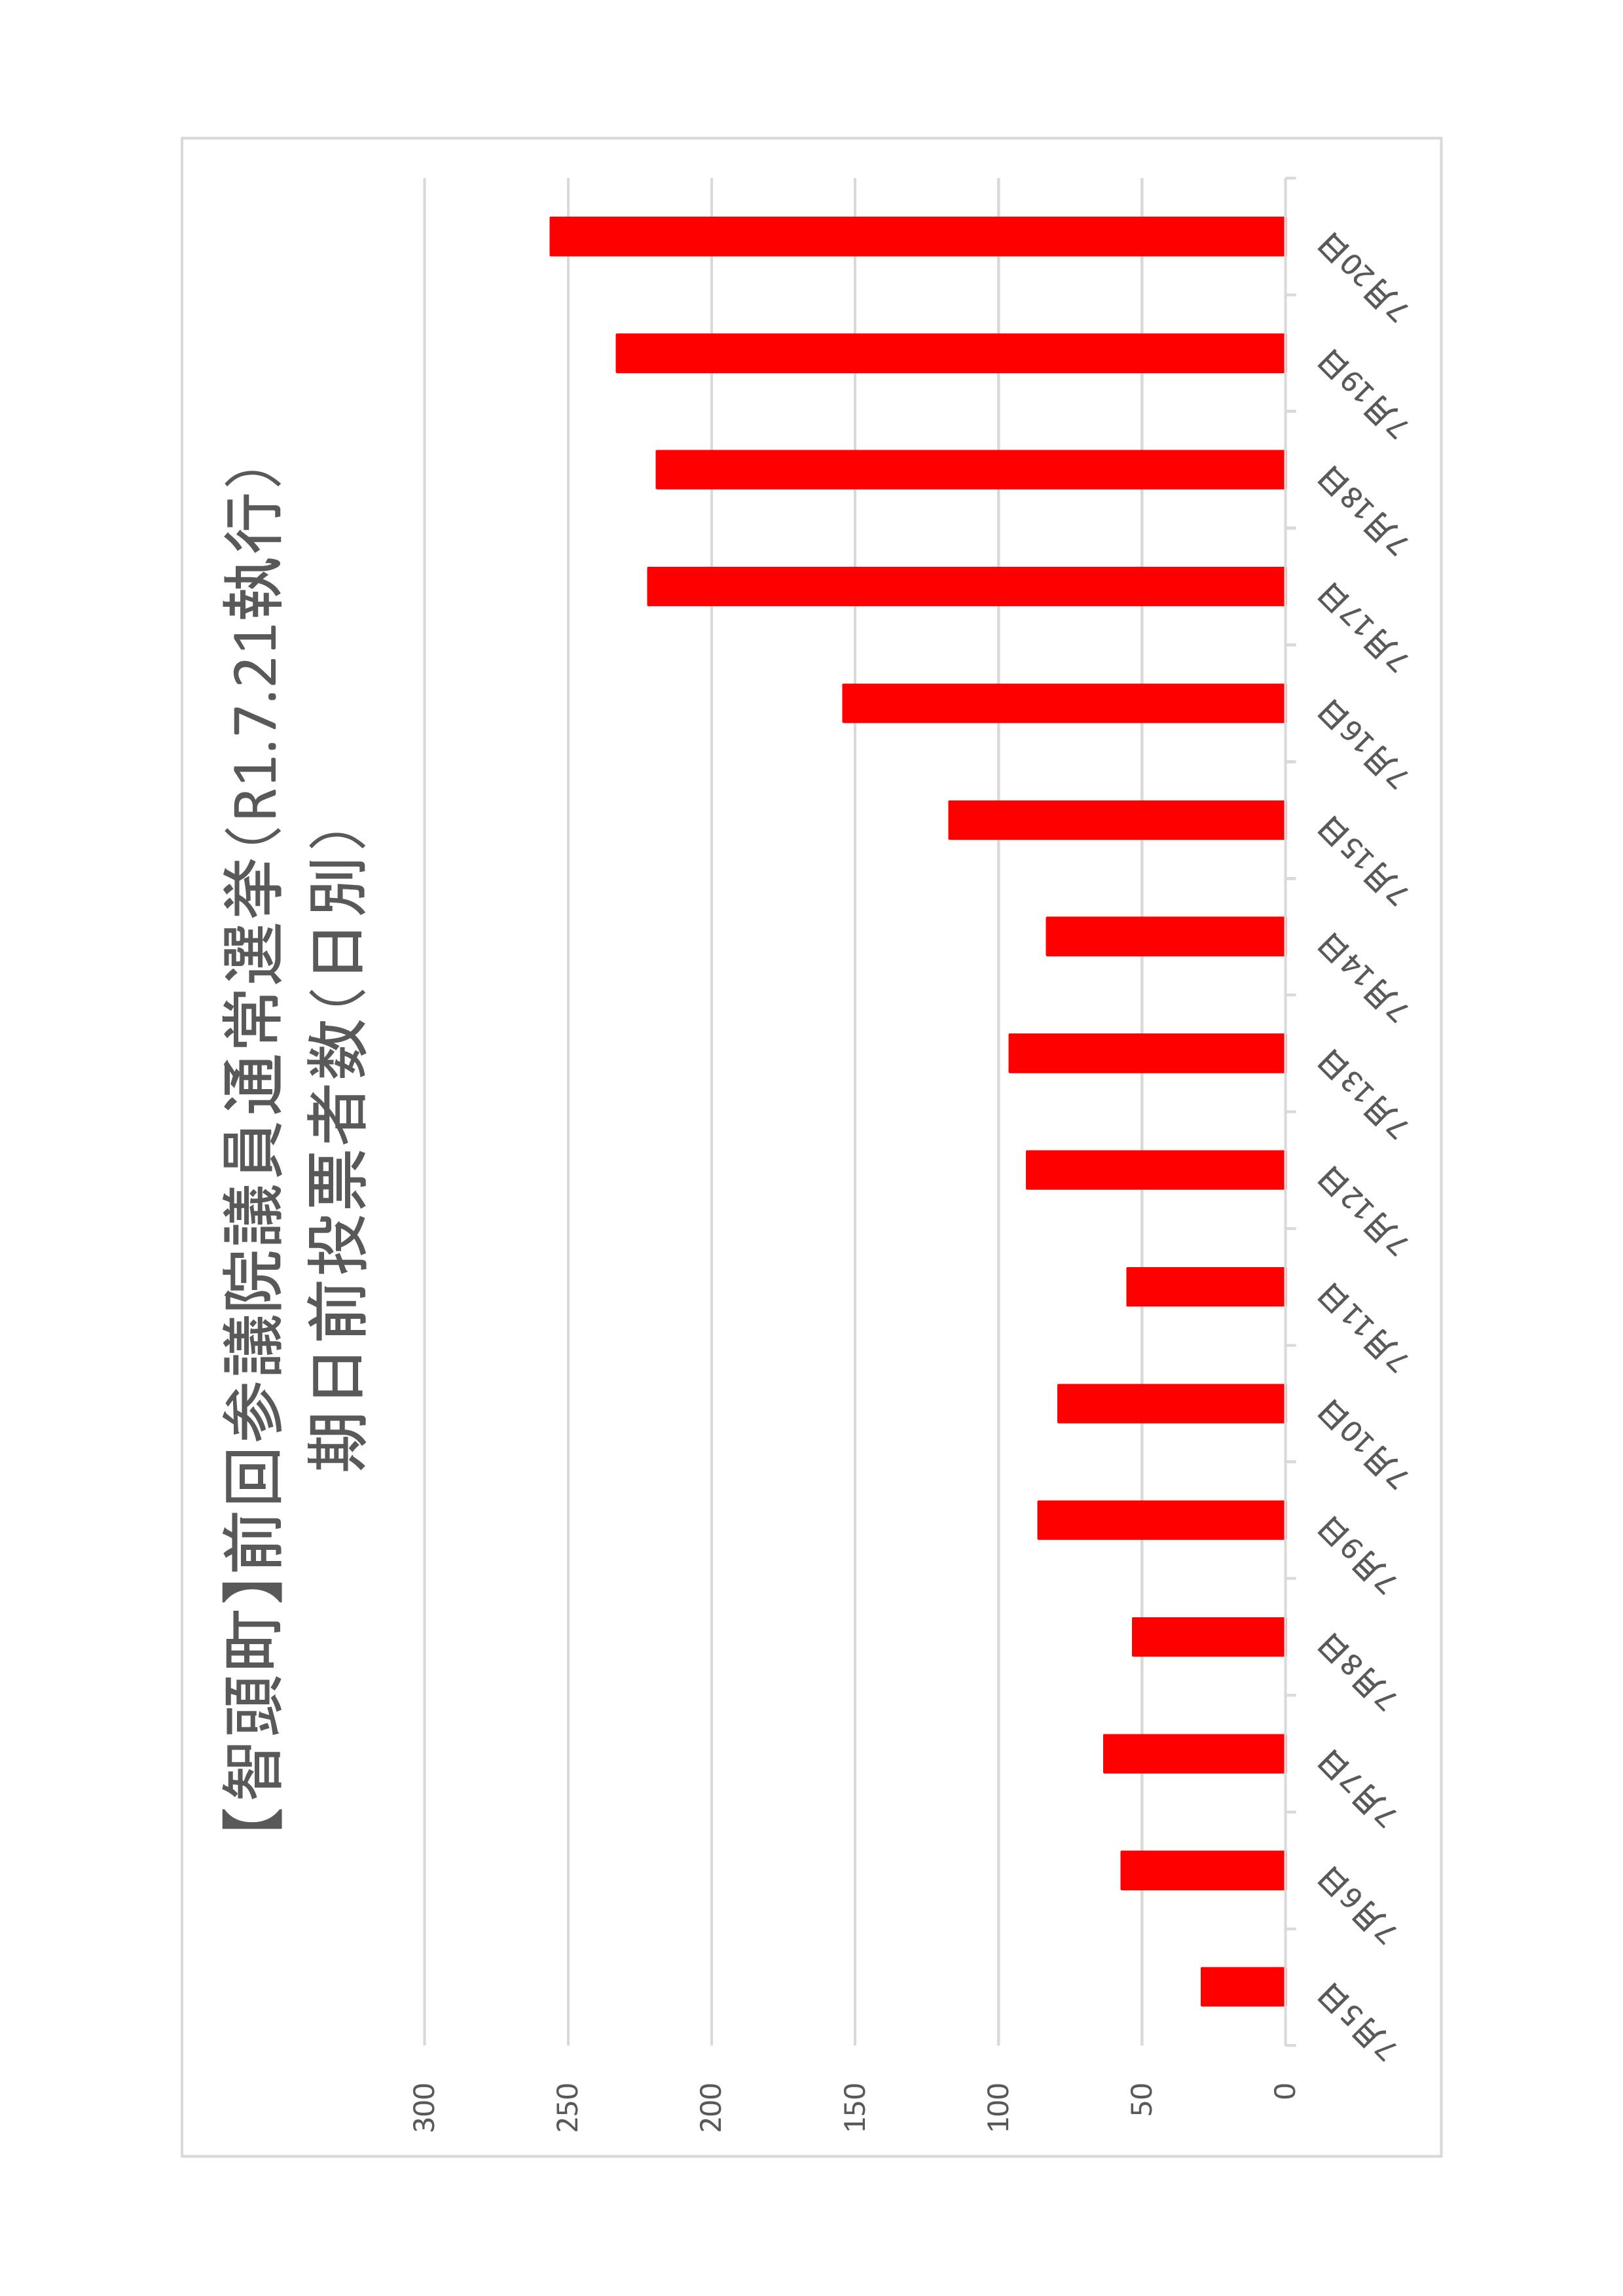 智頭町の日別期日前投票者数のグラフ